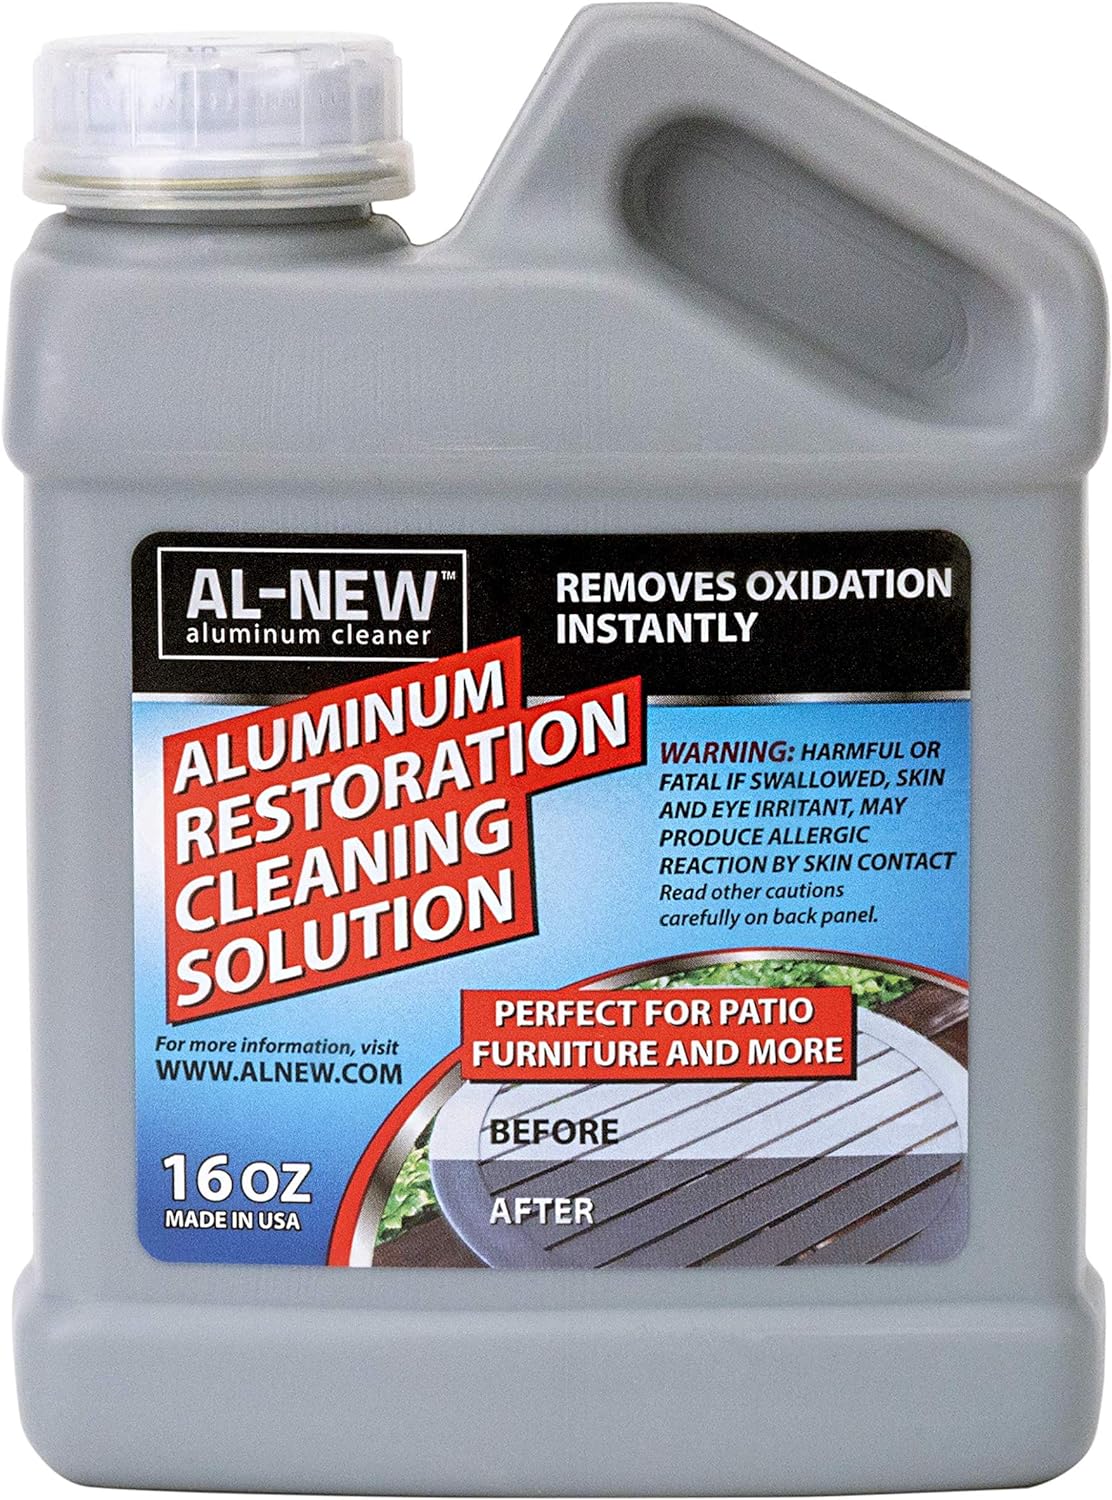 Aluminum Restoration Cleaning Solution 